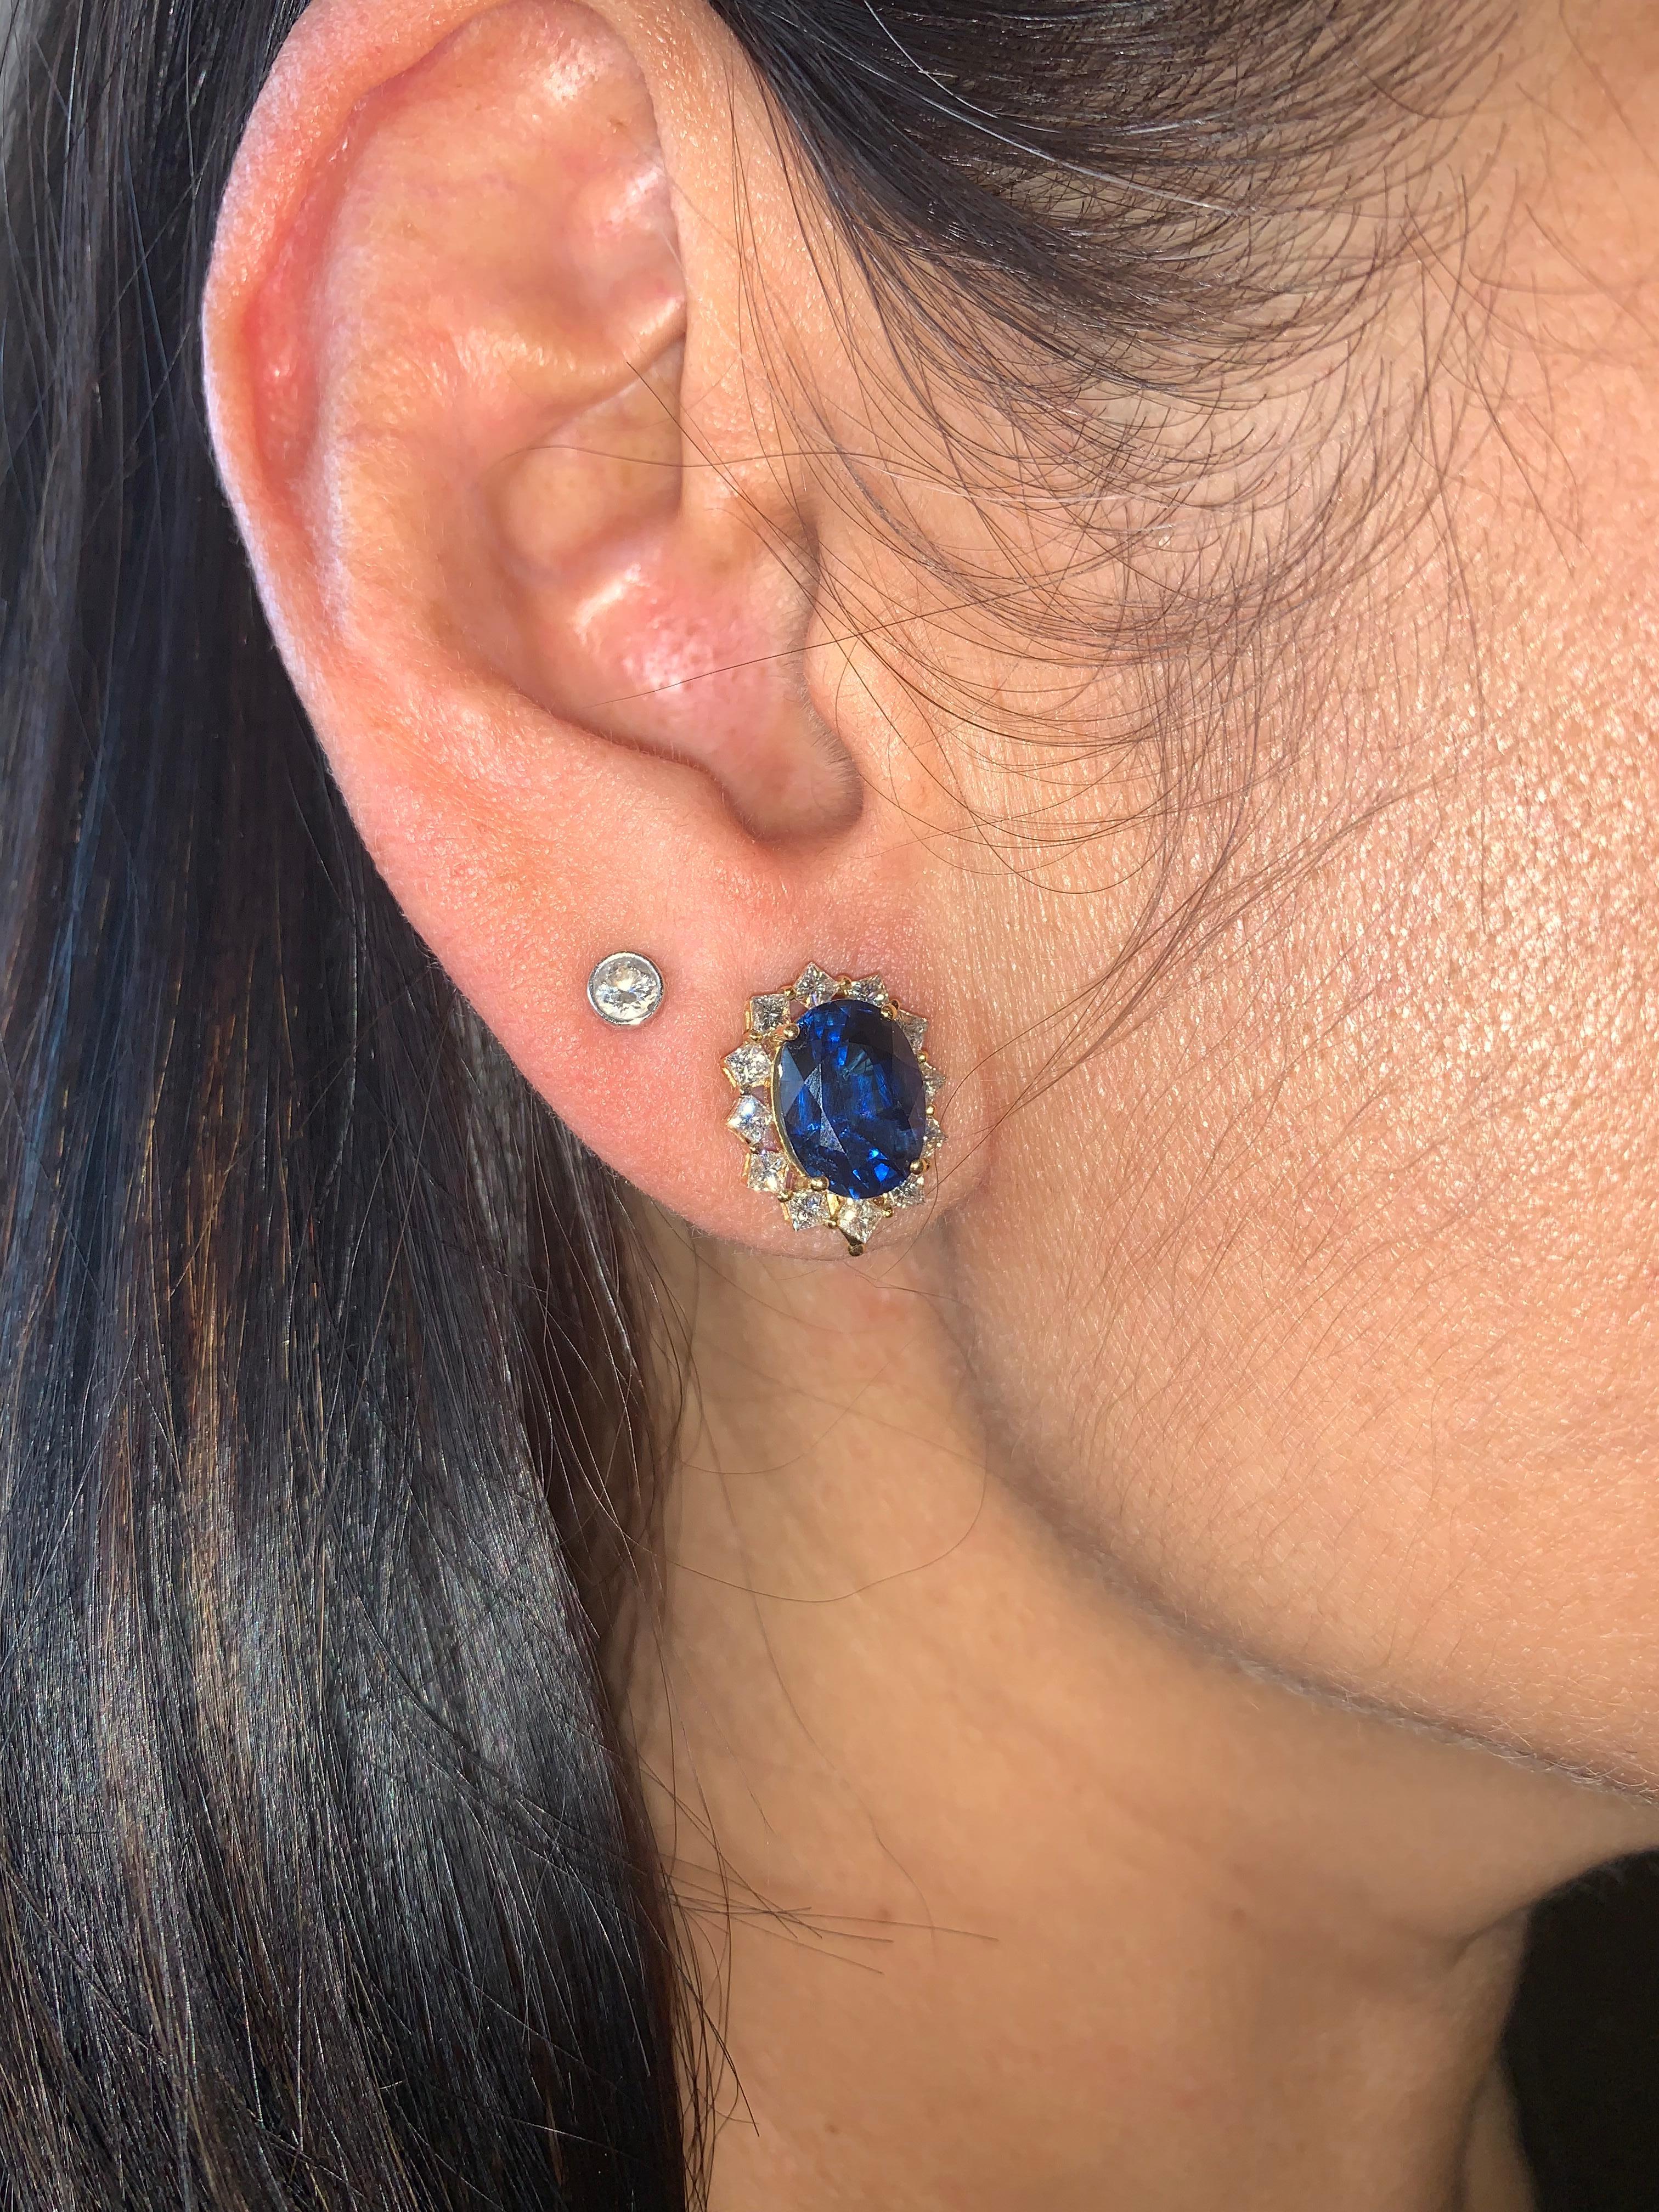 Elegante blaue Saphir-Ohrstecker, die Spaß machen. Ein klassisches Paar Ohrringe, das durch seine Fassung aus Gelbgold einen Hauch von Design erhält und damit einen wahrhaft königlichen Look. 

Blauer Saphir-Ohrstecker mit Diamant aus 18 Karat